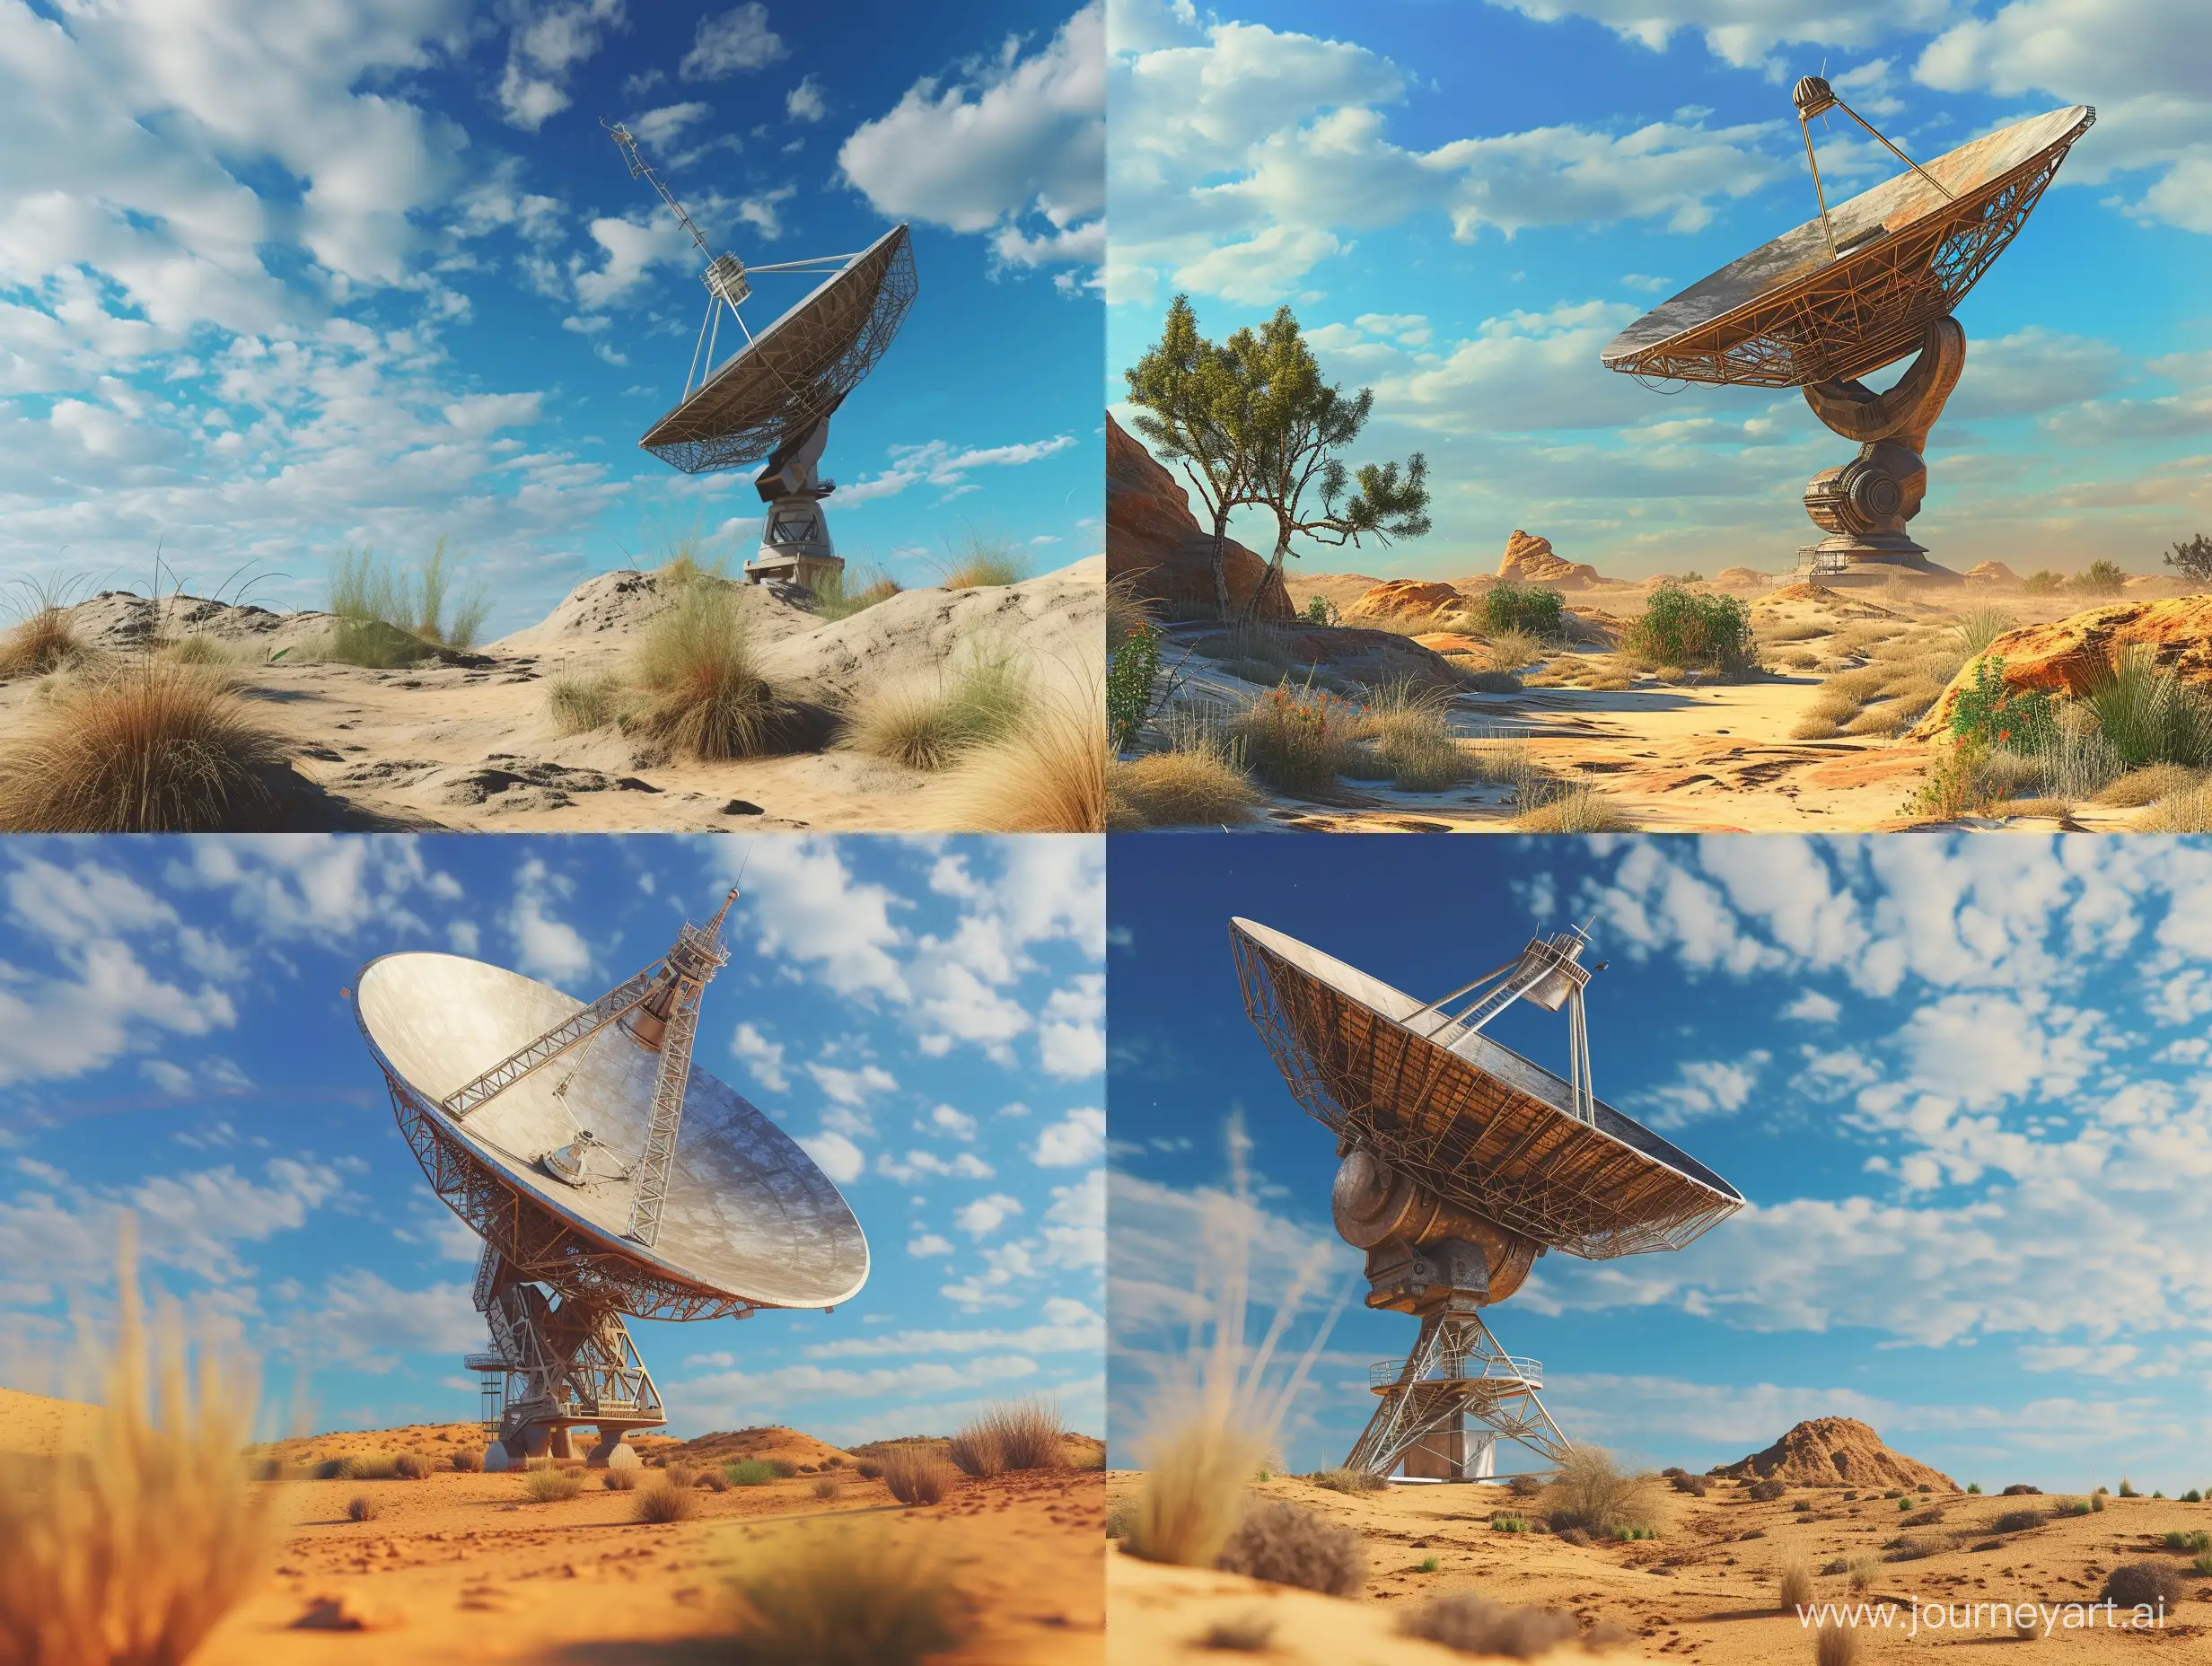 Создай фотореалистичную картинку радиотелескопа в пустыне. Тарелка телеескопа должна смотреть вверх. На фоне создай синее небо с облаками.